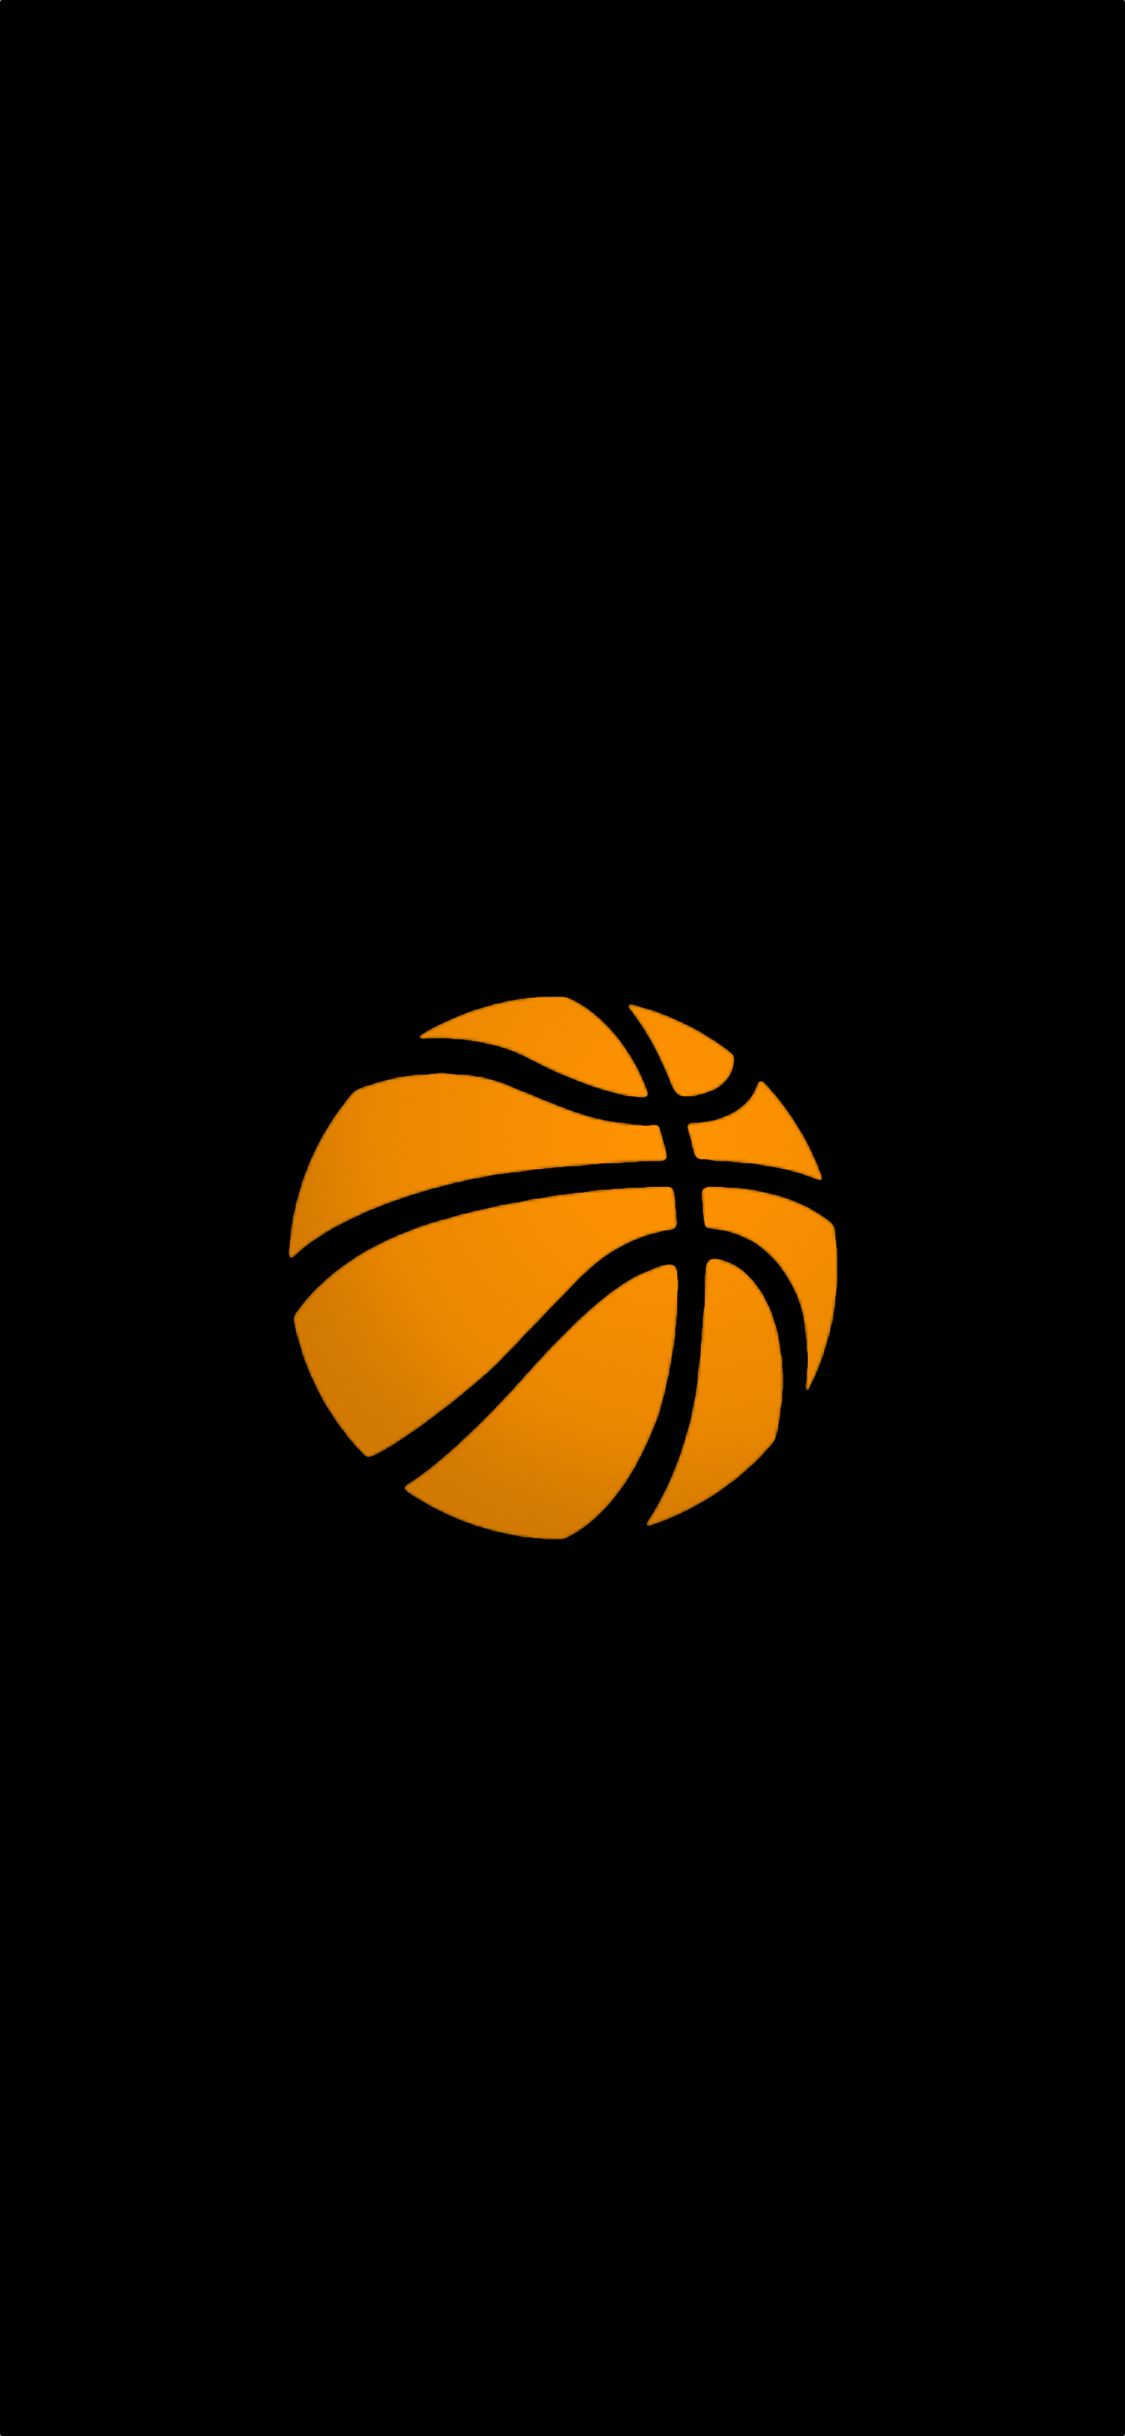 Basketball iPhone X Wallpaper Em